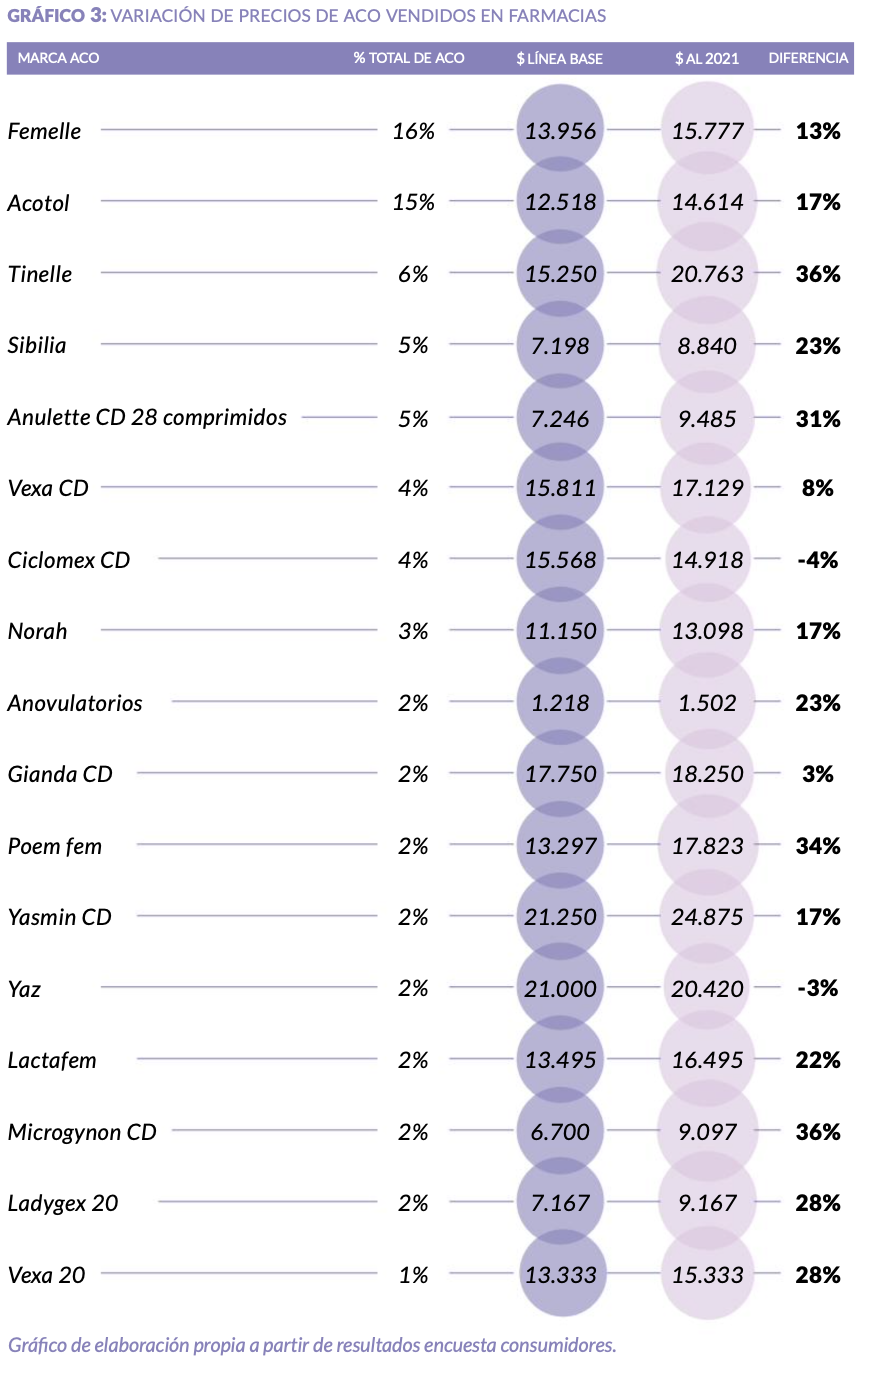 Variación en los precios de los anticonceptivos orales en Latinoamérica durante el 2020, Corporación Miles